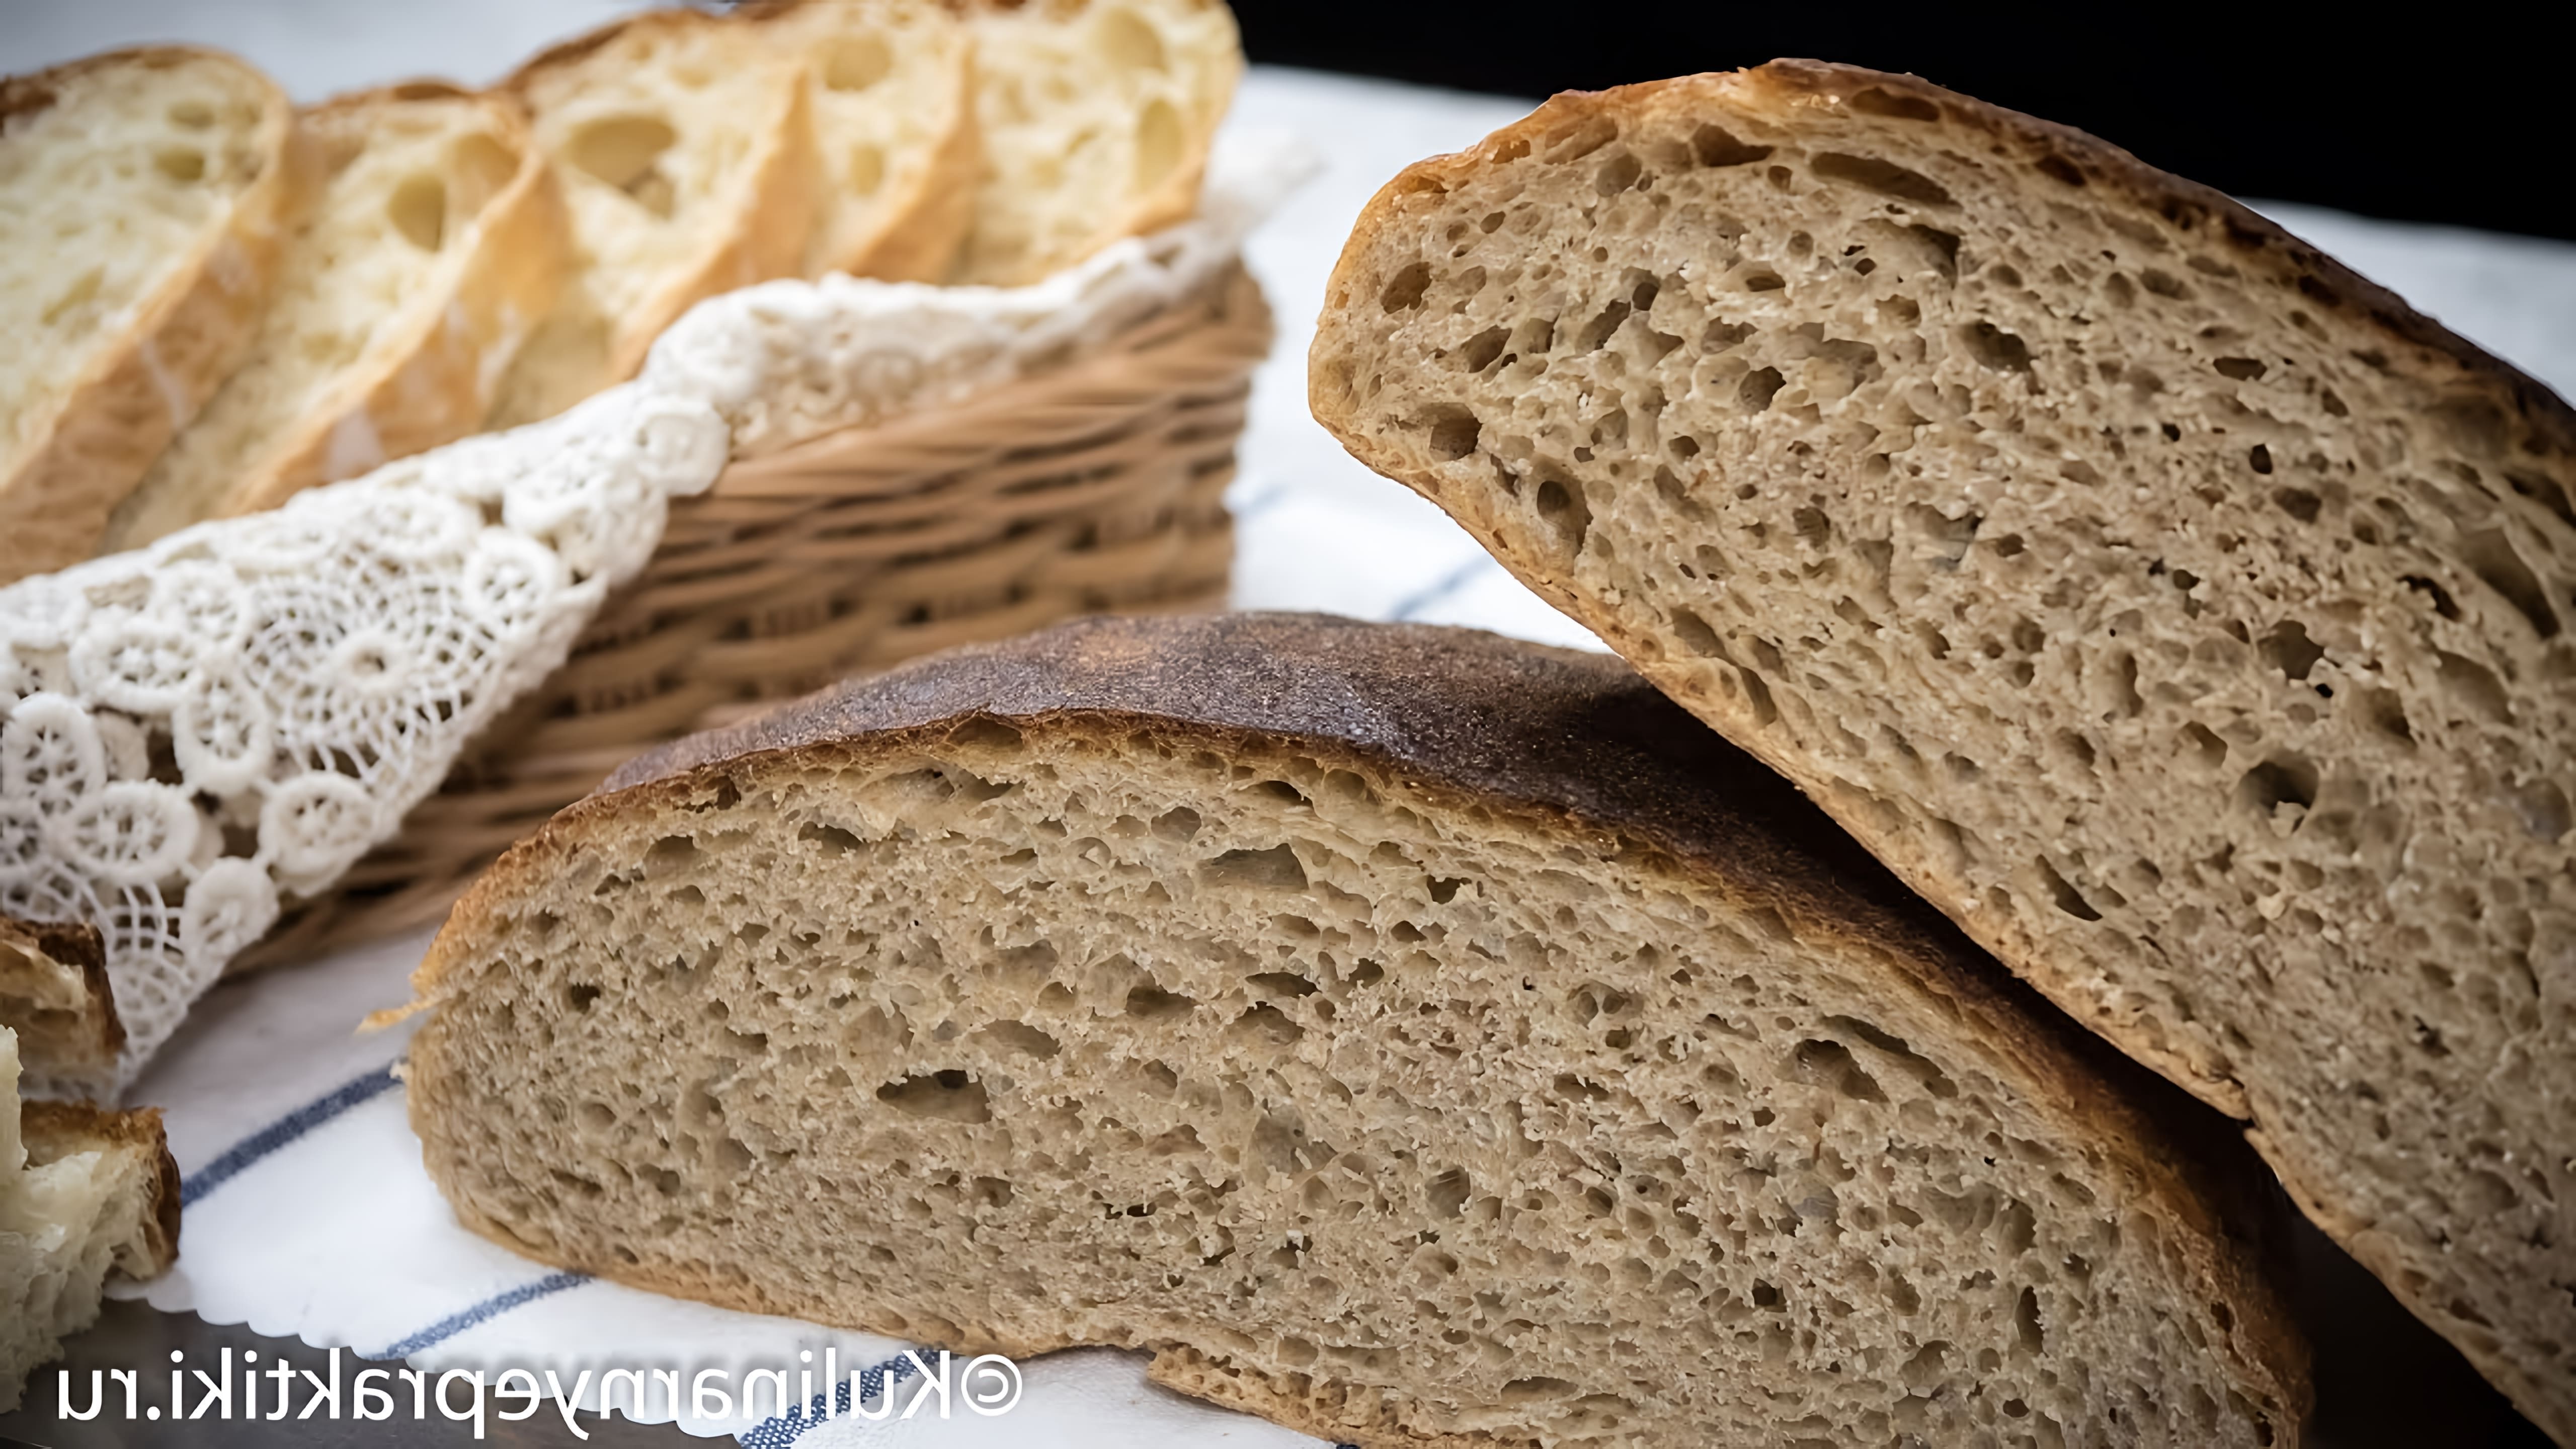 В этом видео демонстрируется рецепт домашнего хлеба без замеса, который можно приготовить из ржаной и пшеничной муки